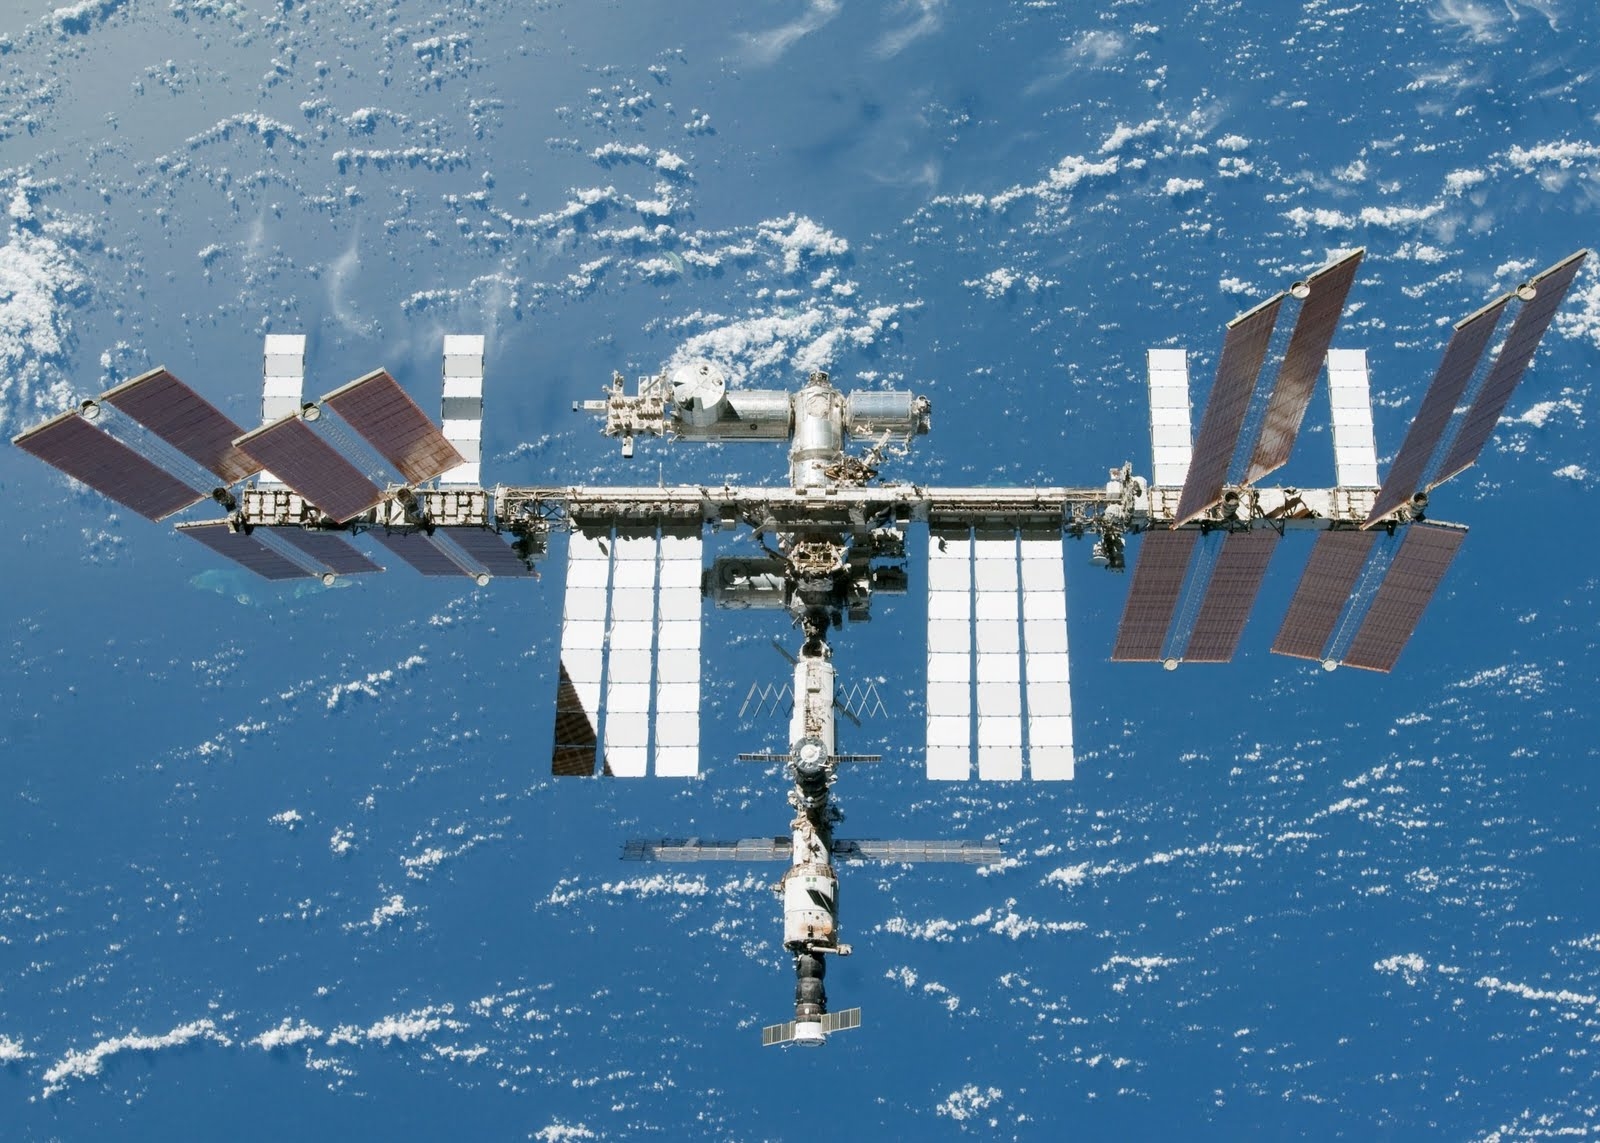 ОАЭ и NASA объединят усилия для запусков космических аппаратов с человеком на борту